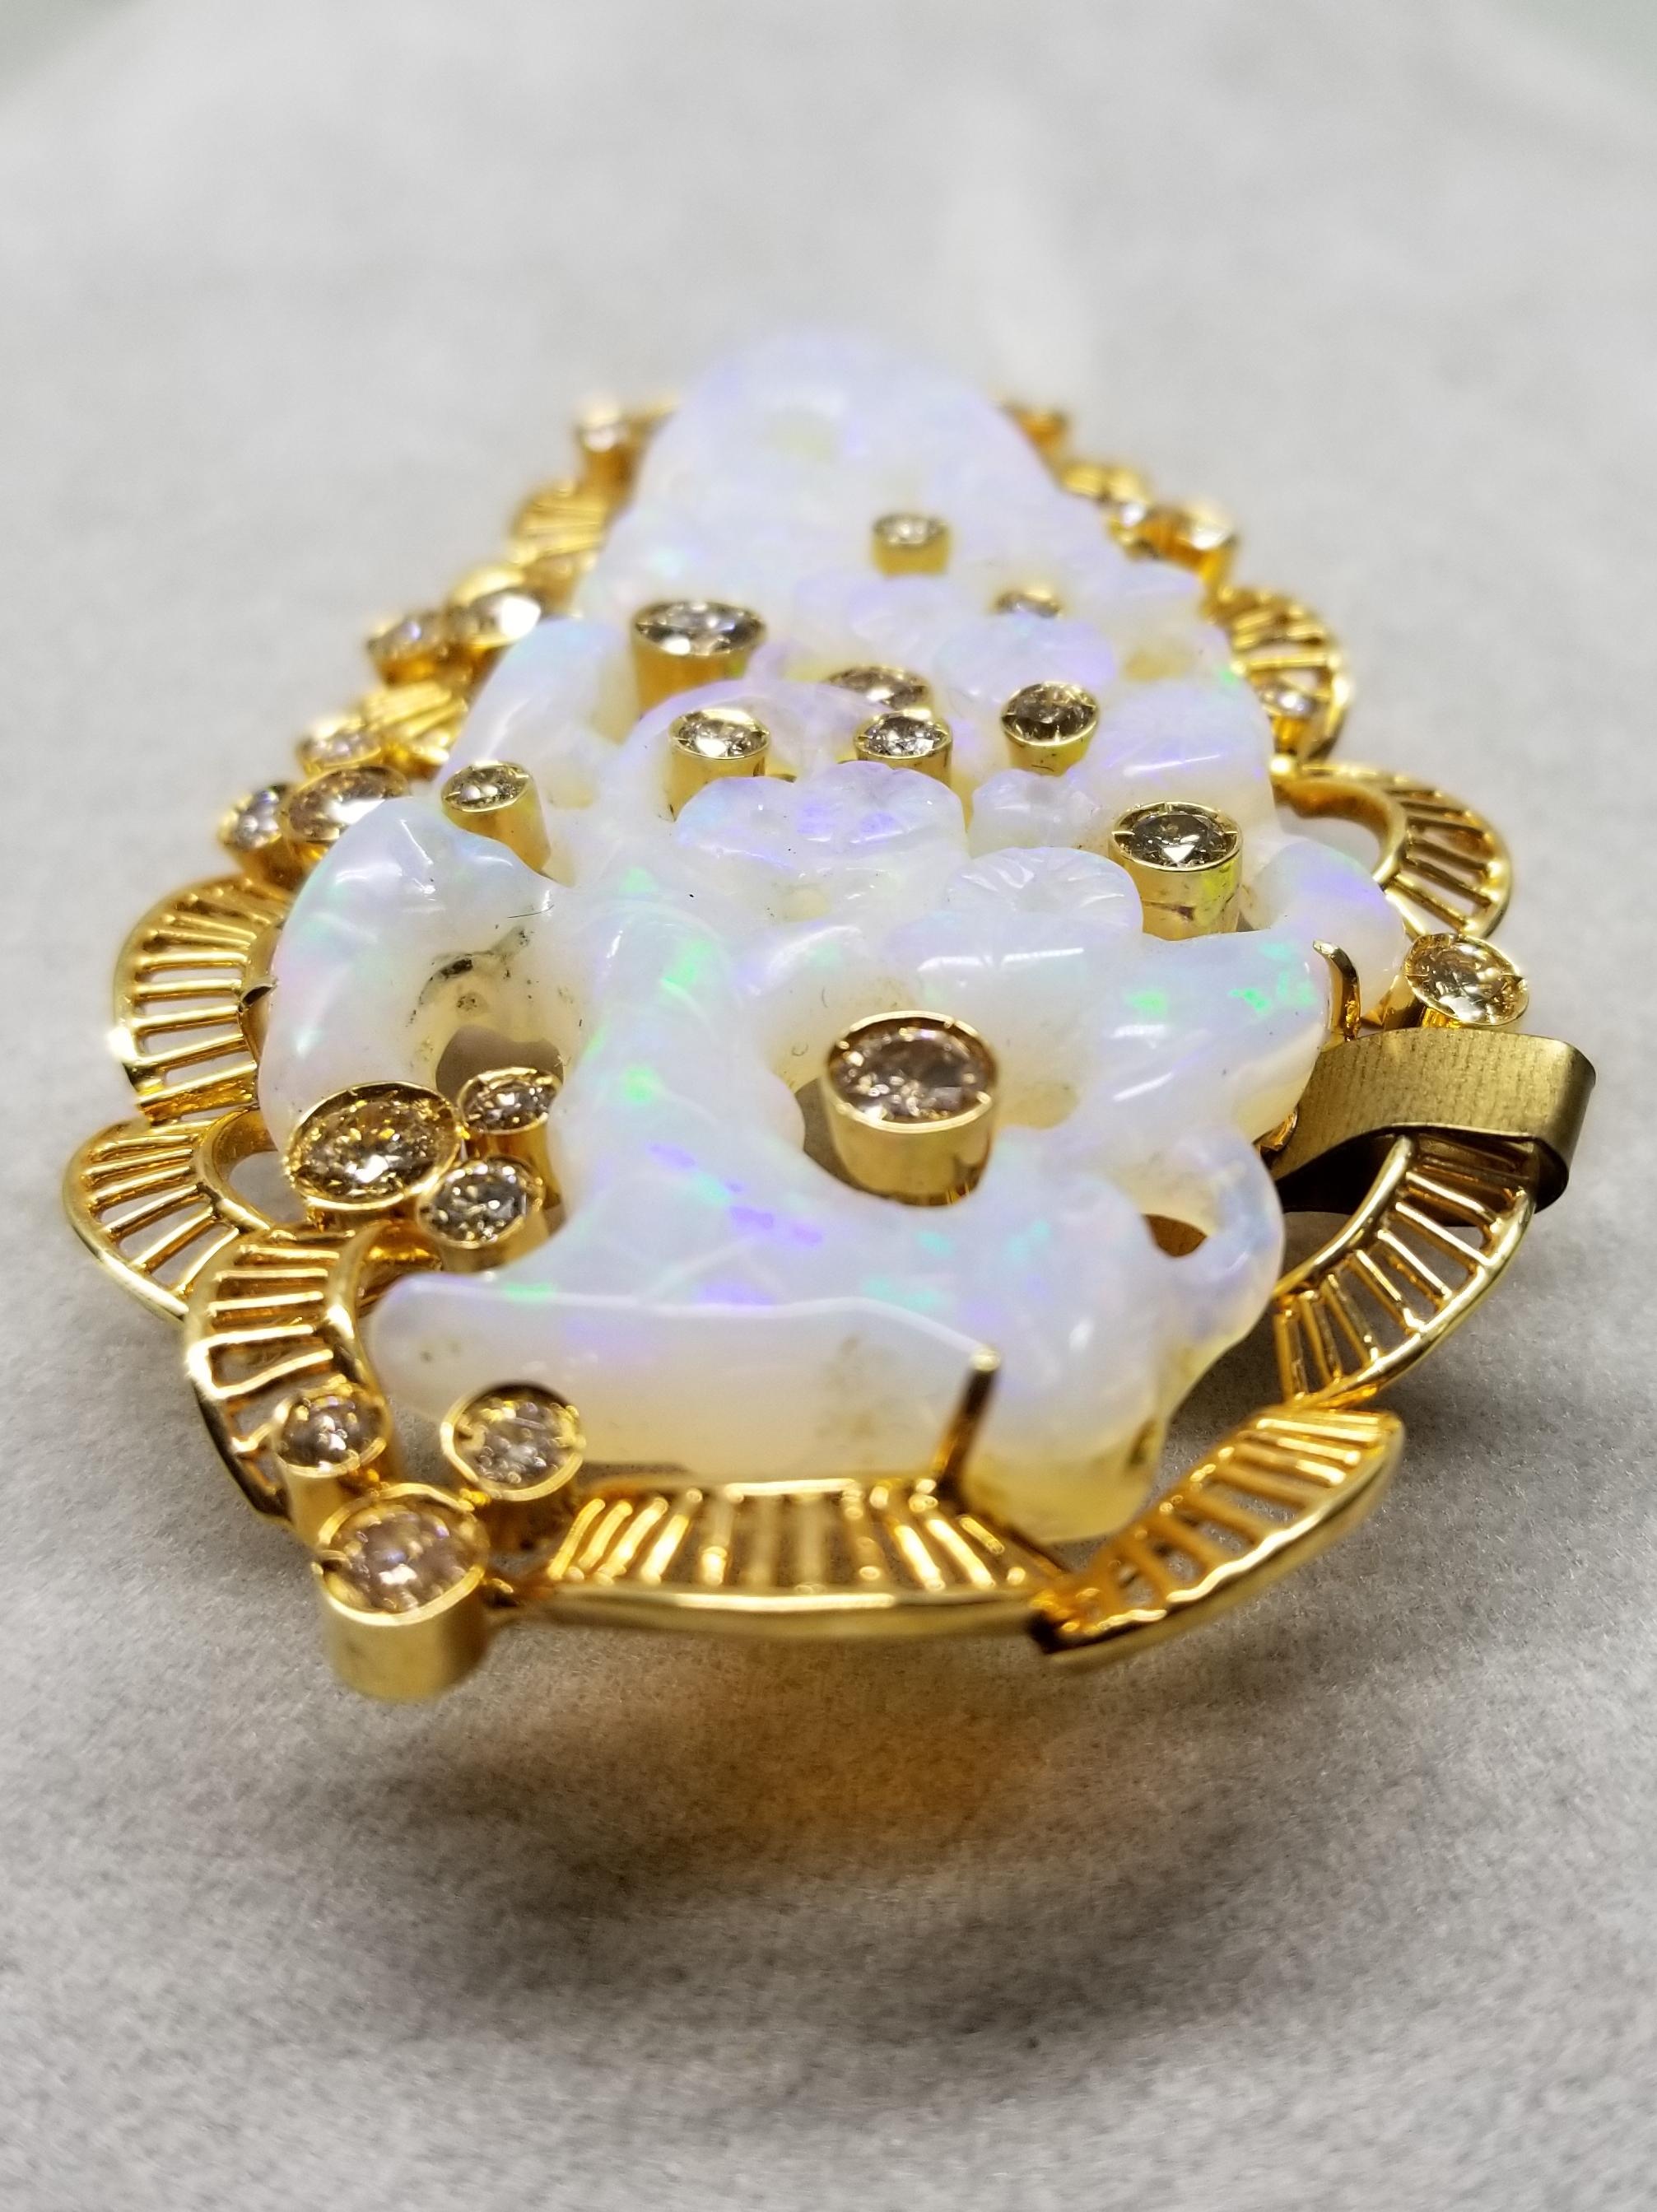 Round Cut 18 Karat Yellow Gold Opal and Diamond Pin/Pendant